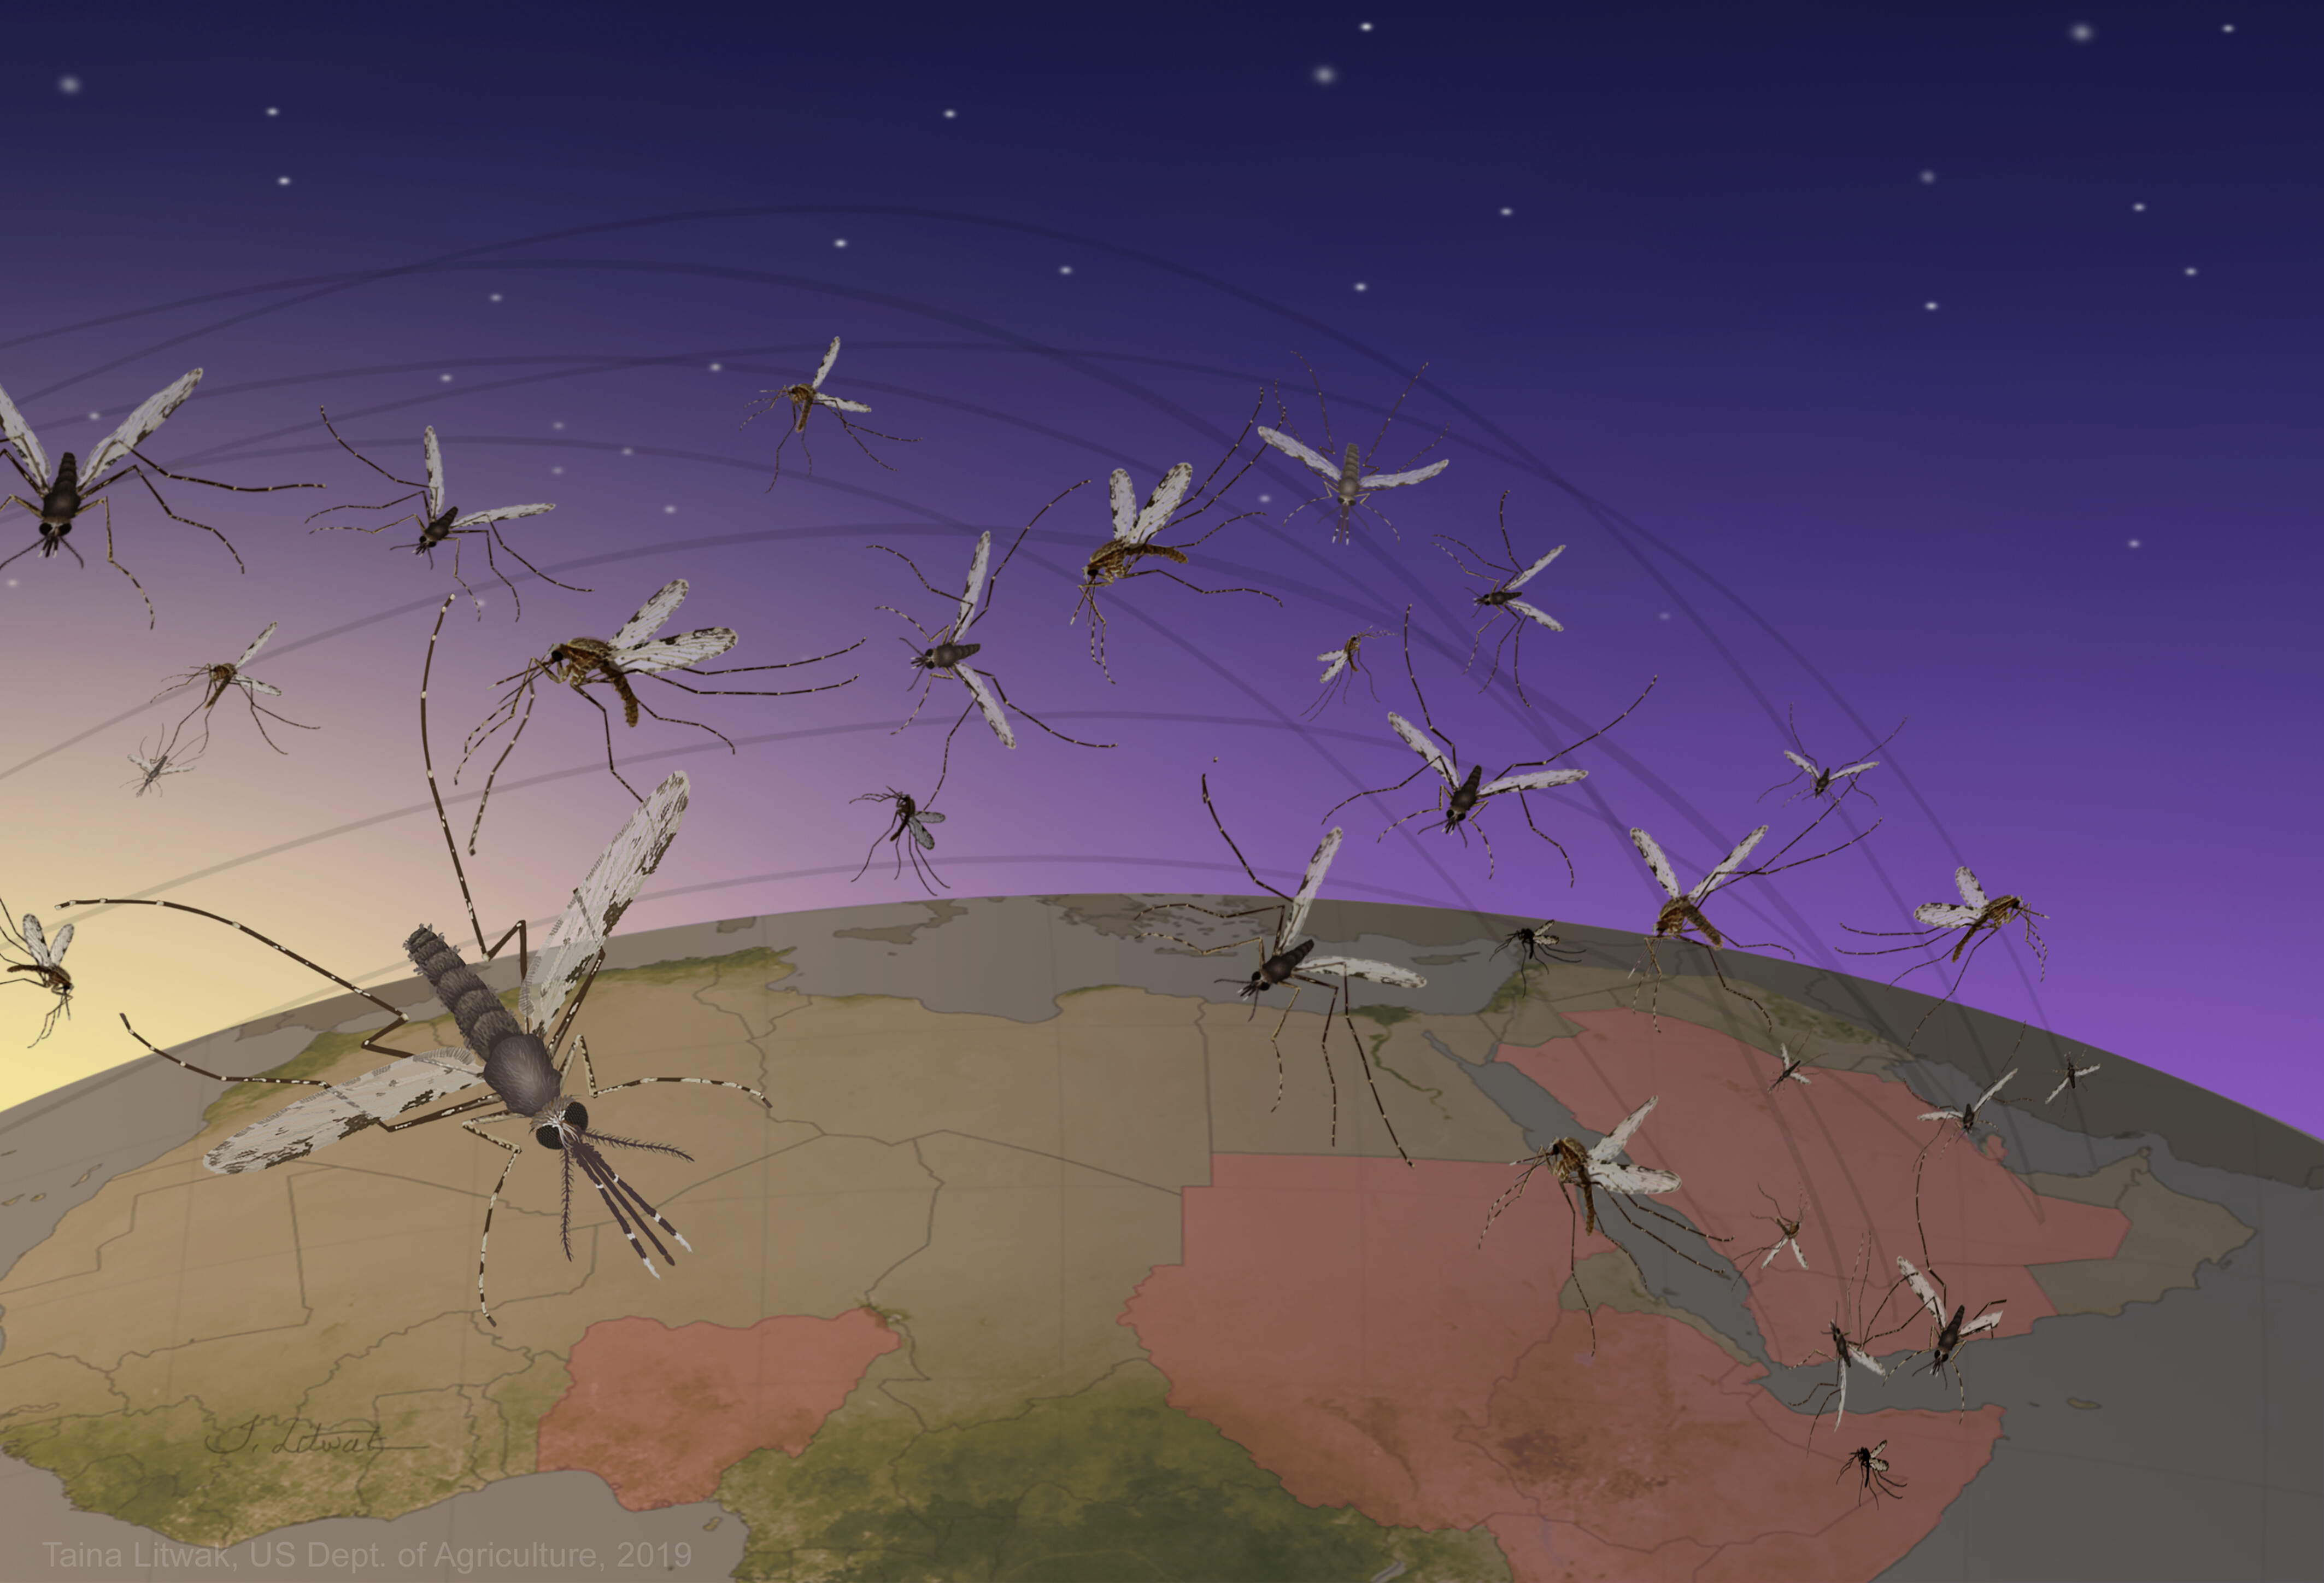 Urban malaria may be spreading via the wind